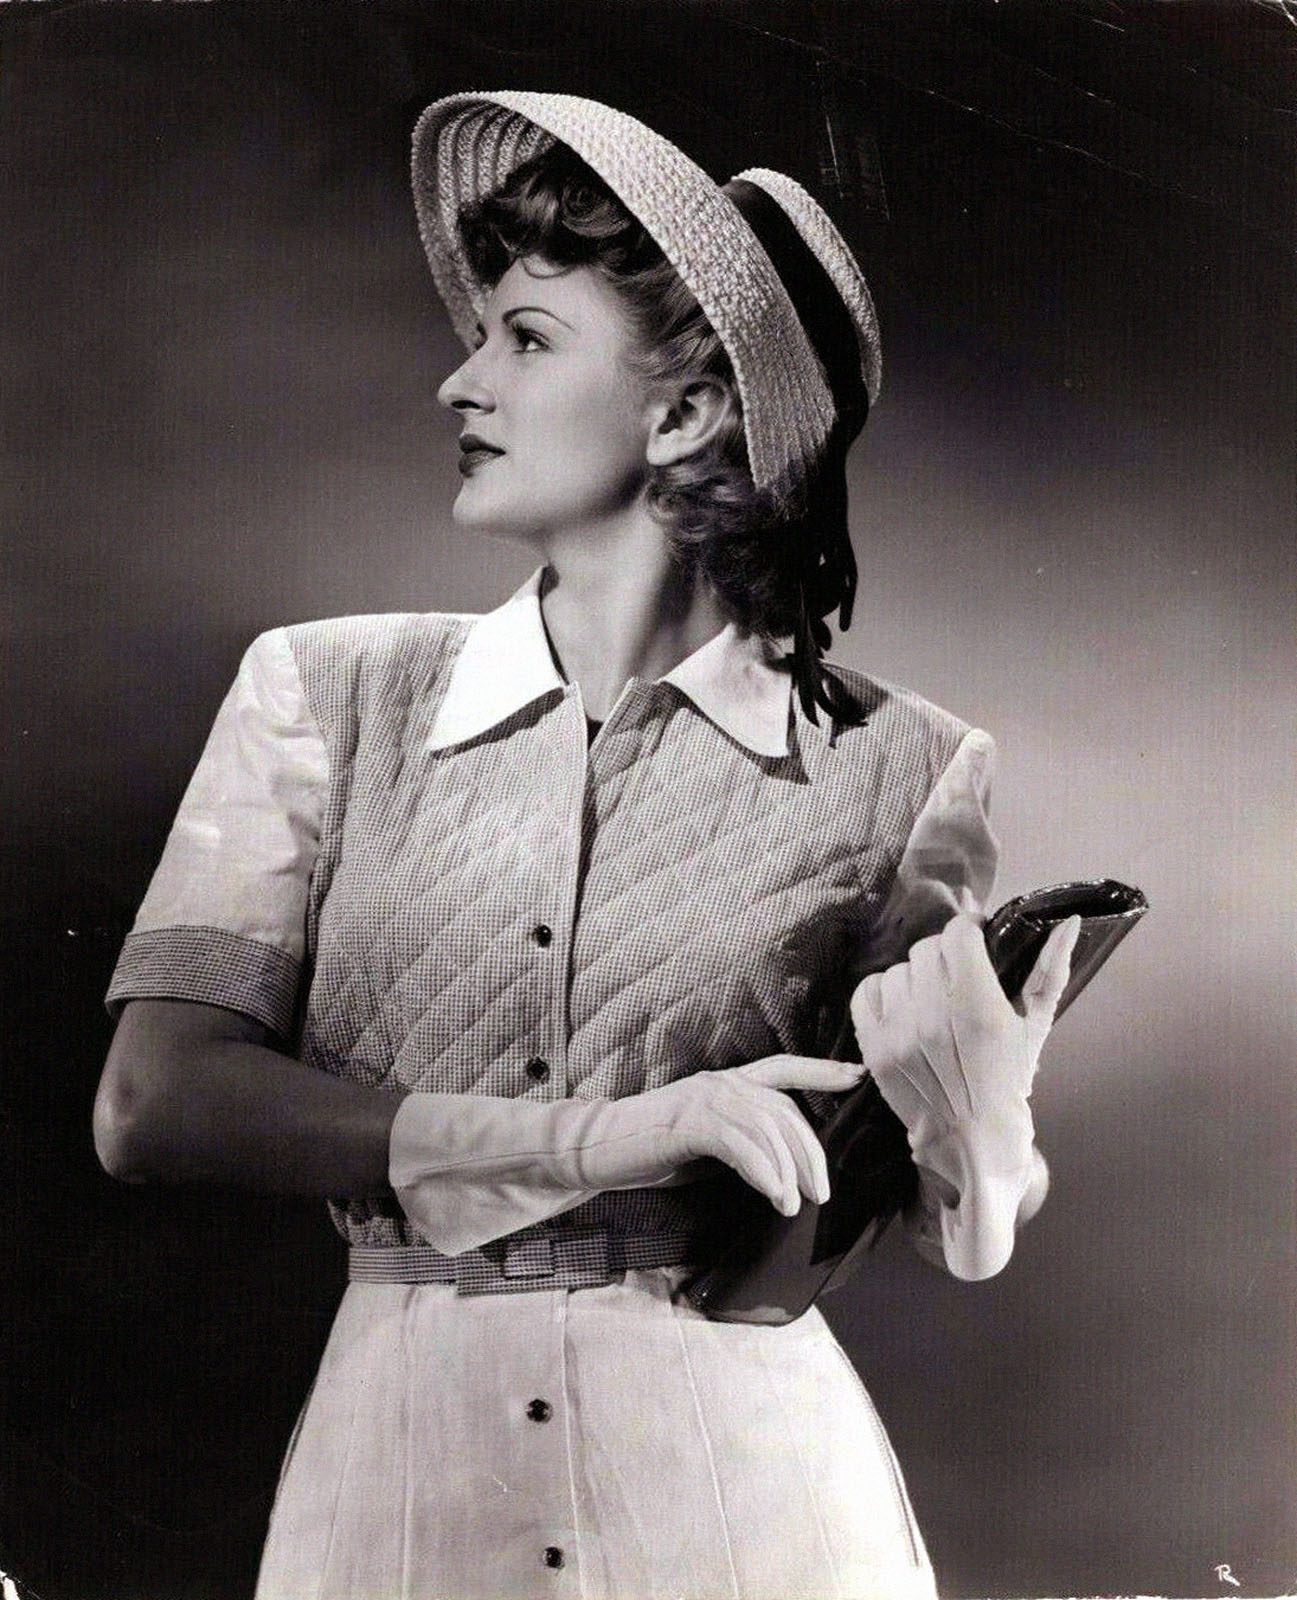 Joan Barclay